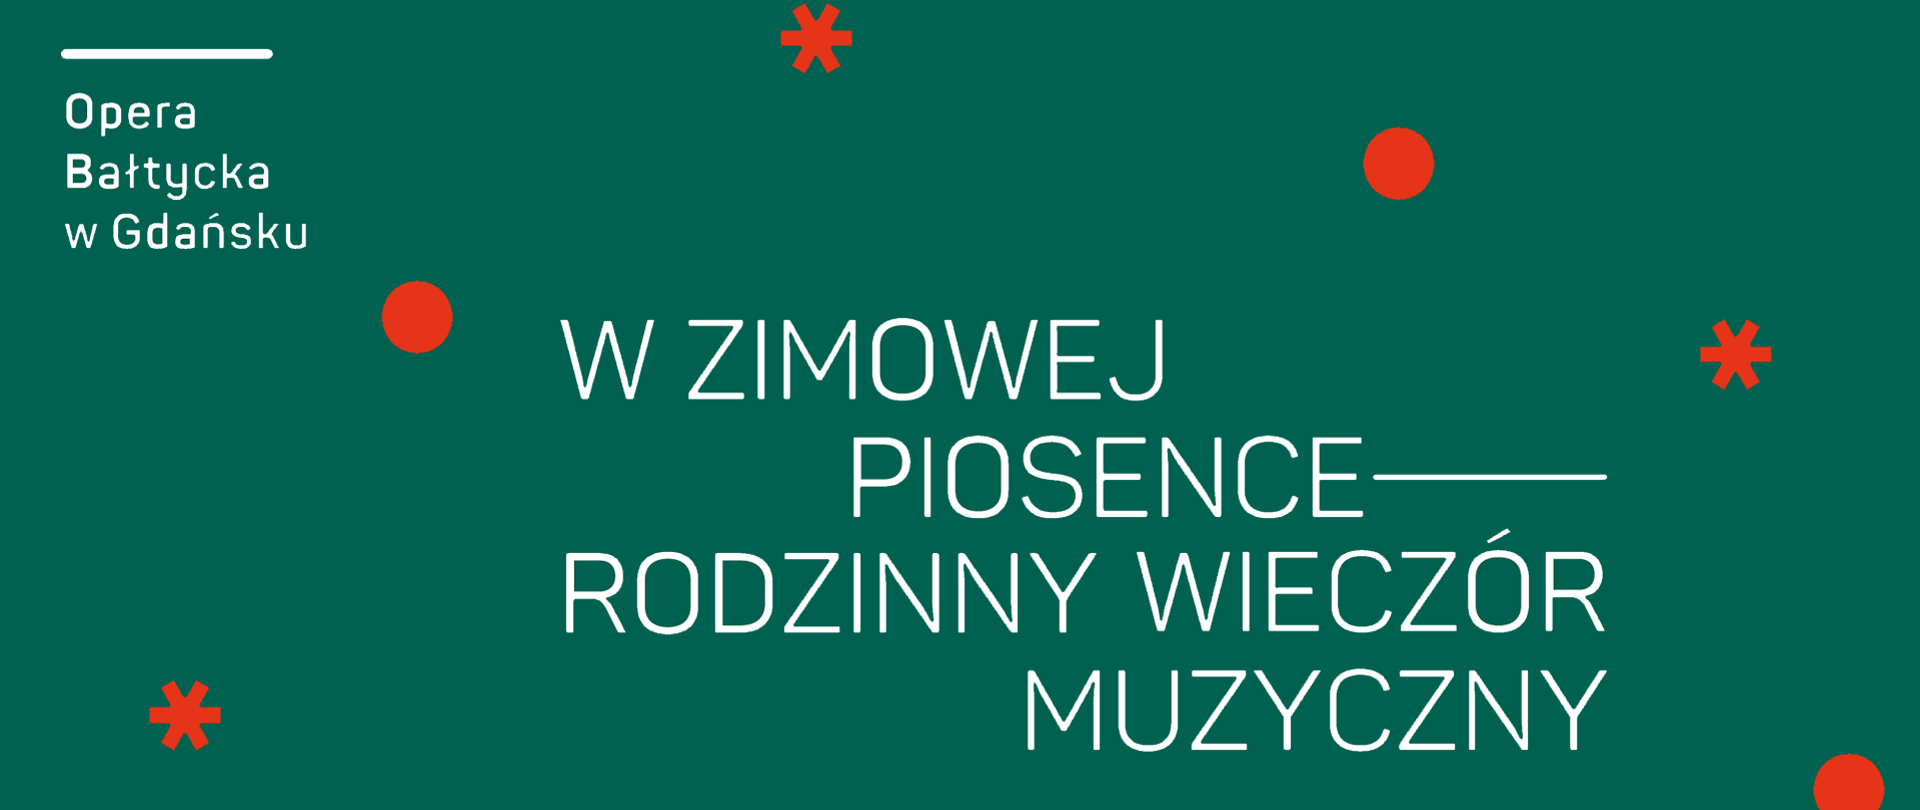 Na zielonym tle w lewy górnym rogu logo Opery Bałtyckiej w Gdańsku oraz tytuł koncertu "W zimowej piosence - rodzinny wieczór muzyczny"